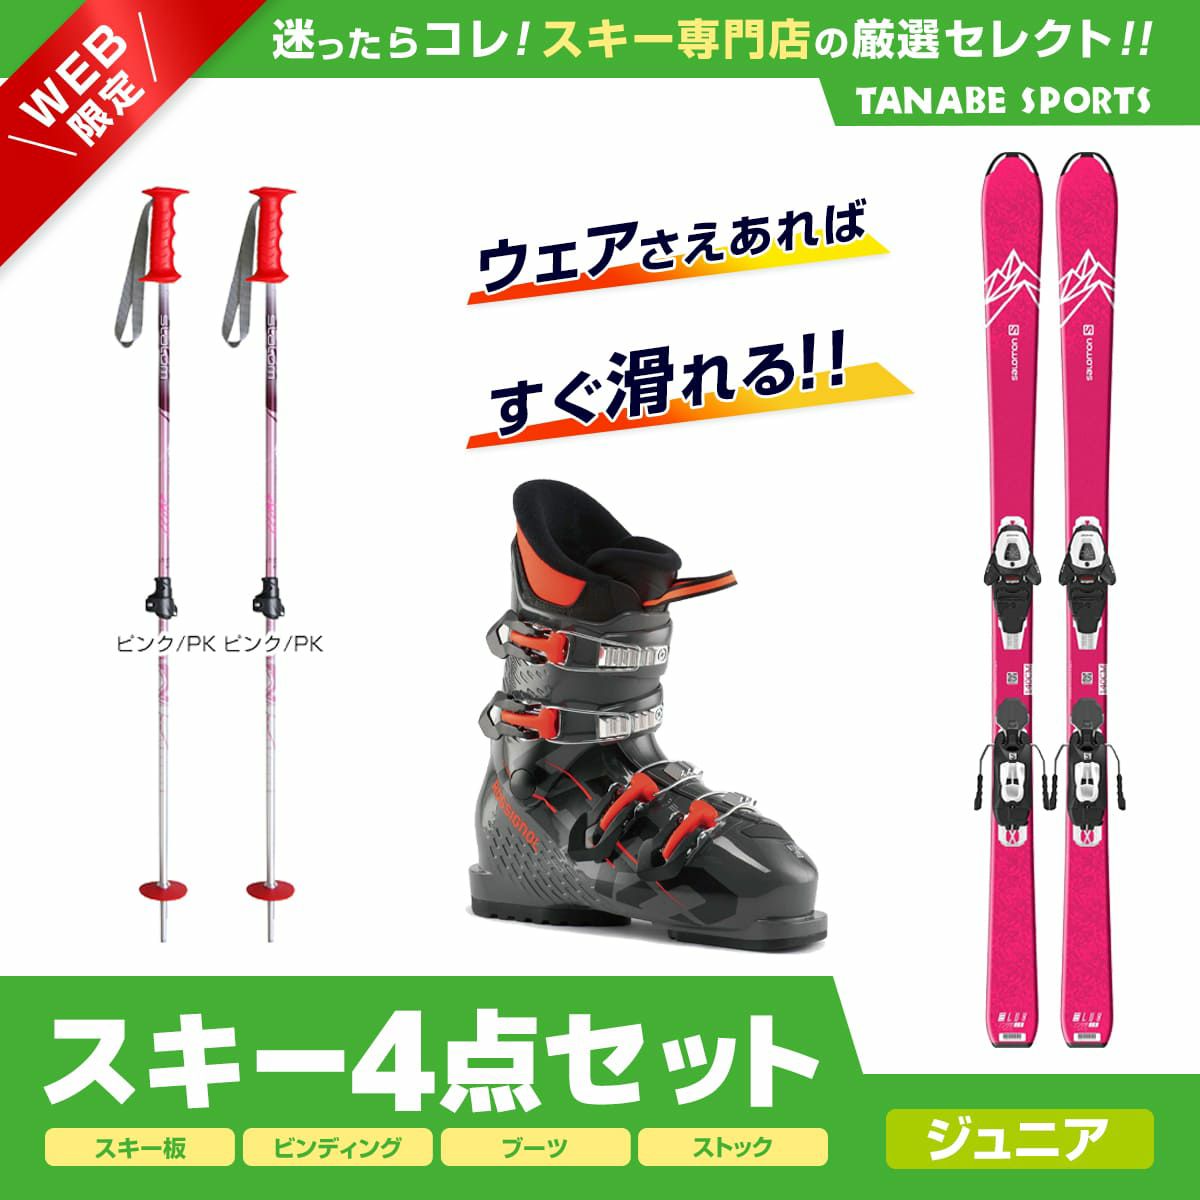 スキー 5点 セット メンズブーツ付き ロシニョール 19-20 REACT R2 142〜170cm 金具付き ストック グローブ付き 初心者におすすめ 大人用 スキー福袋